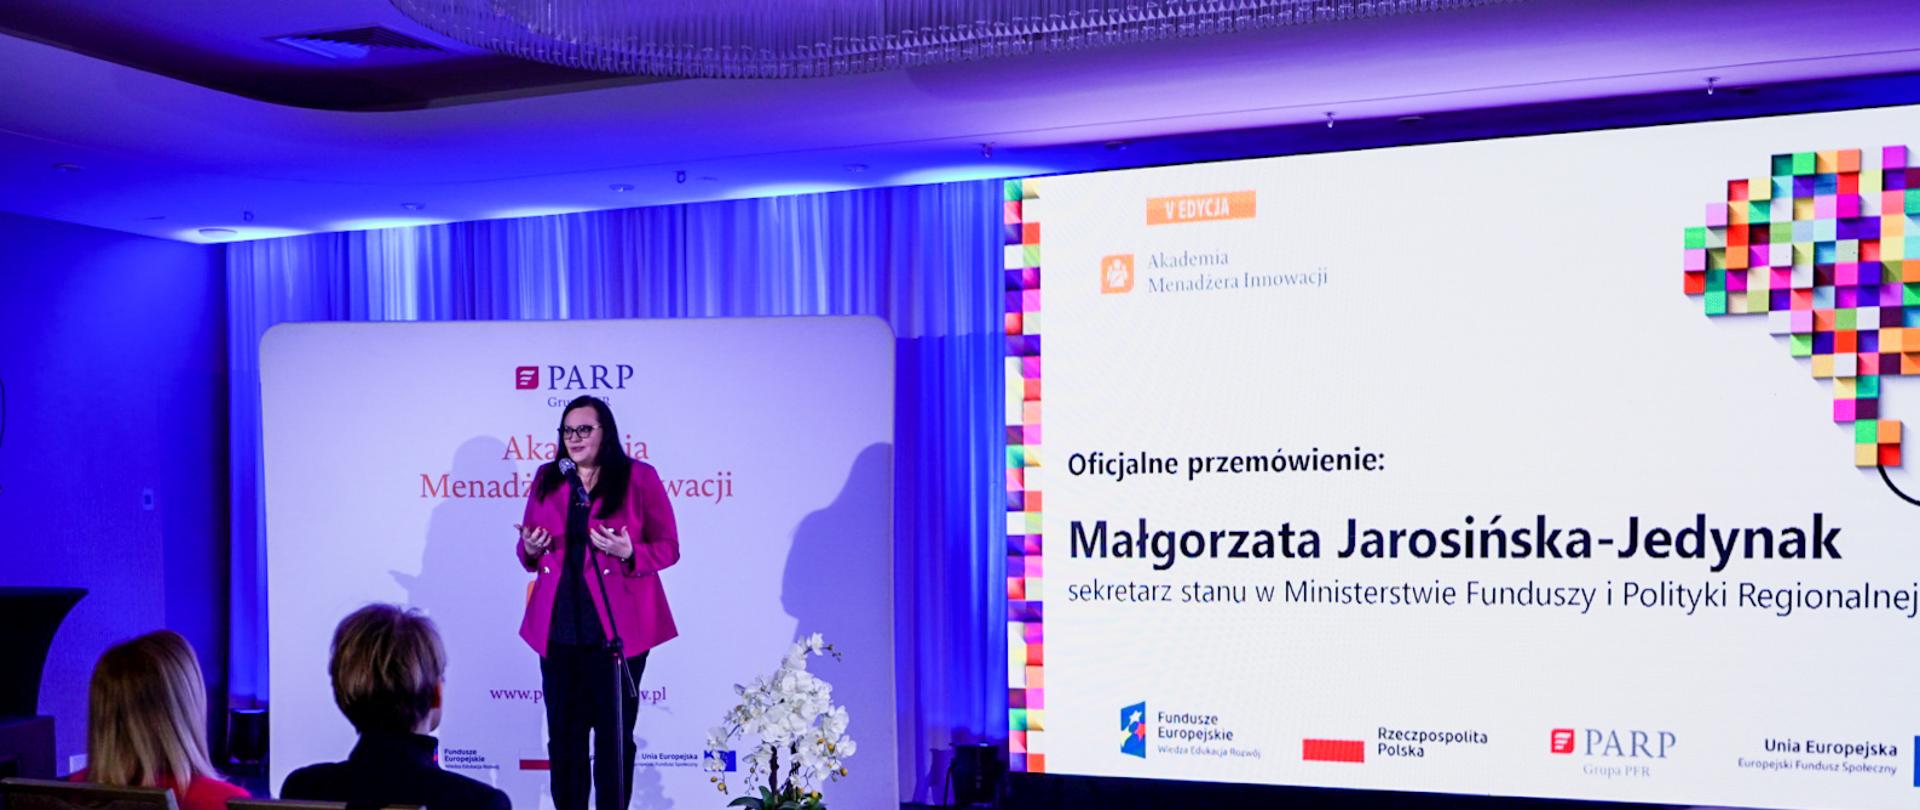 Wiceminister Małgorzata Jarosińska-Jedynak stoi na scenie i przemawia do ludzi zgromadzonych na sali.